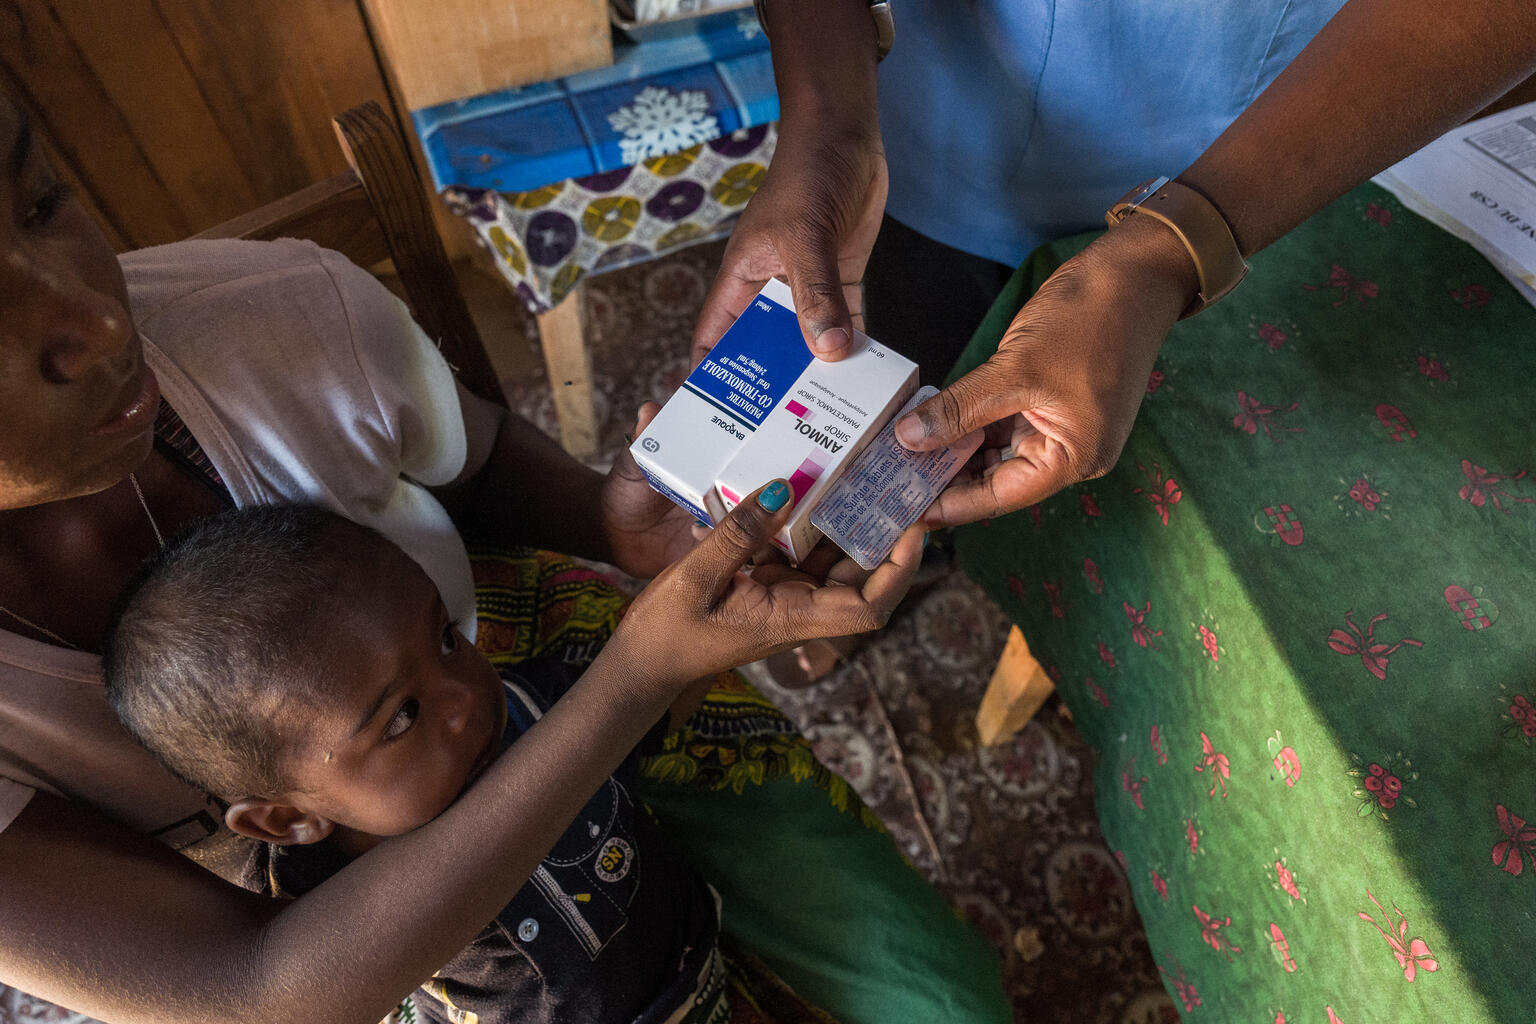 ユニセフの現金給付支援で受け取った現金で、1歳11カ月の子どもの薬や食料を買う母親。(マダガスカル、2022年2月撮影)